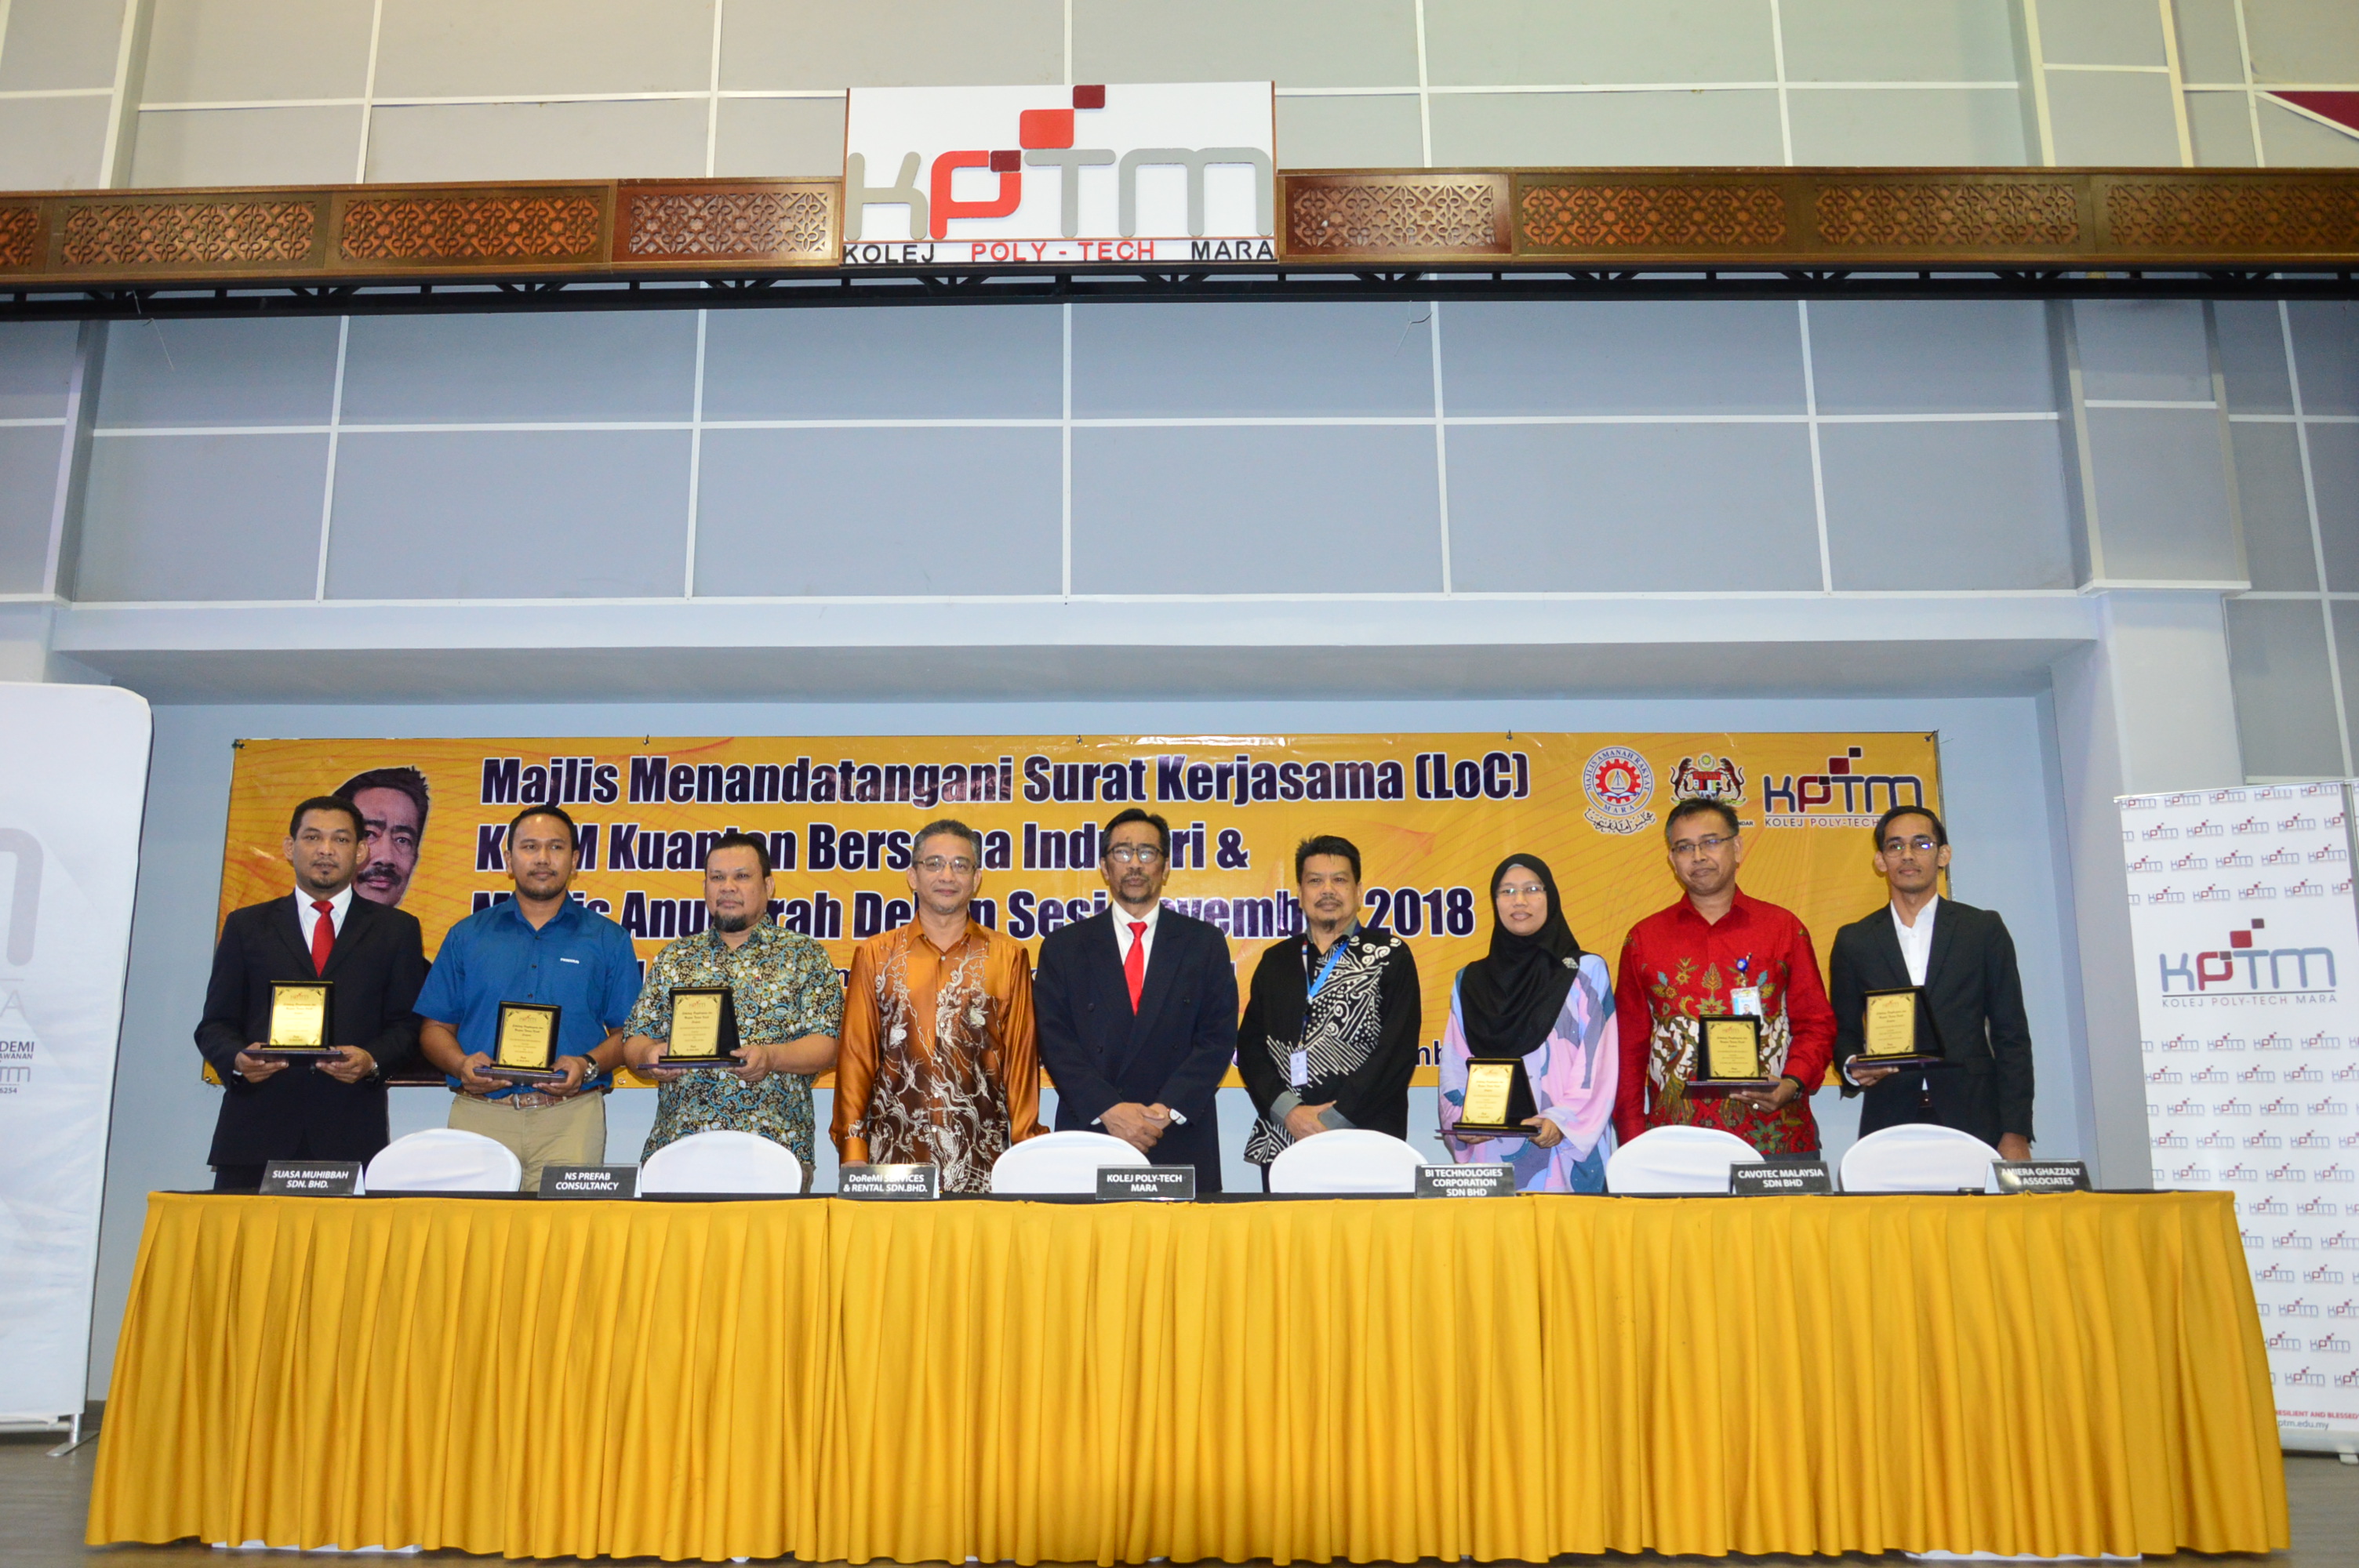 Majlis Menandatangani Surat Kerjasama (Loc) KPTM Kuantan Bersama Industri Mengukuhkan Jaringan Industri